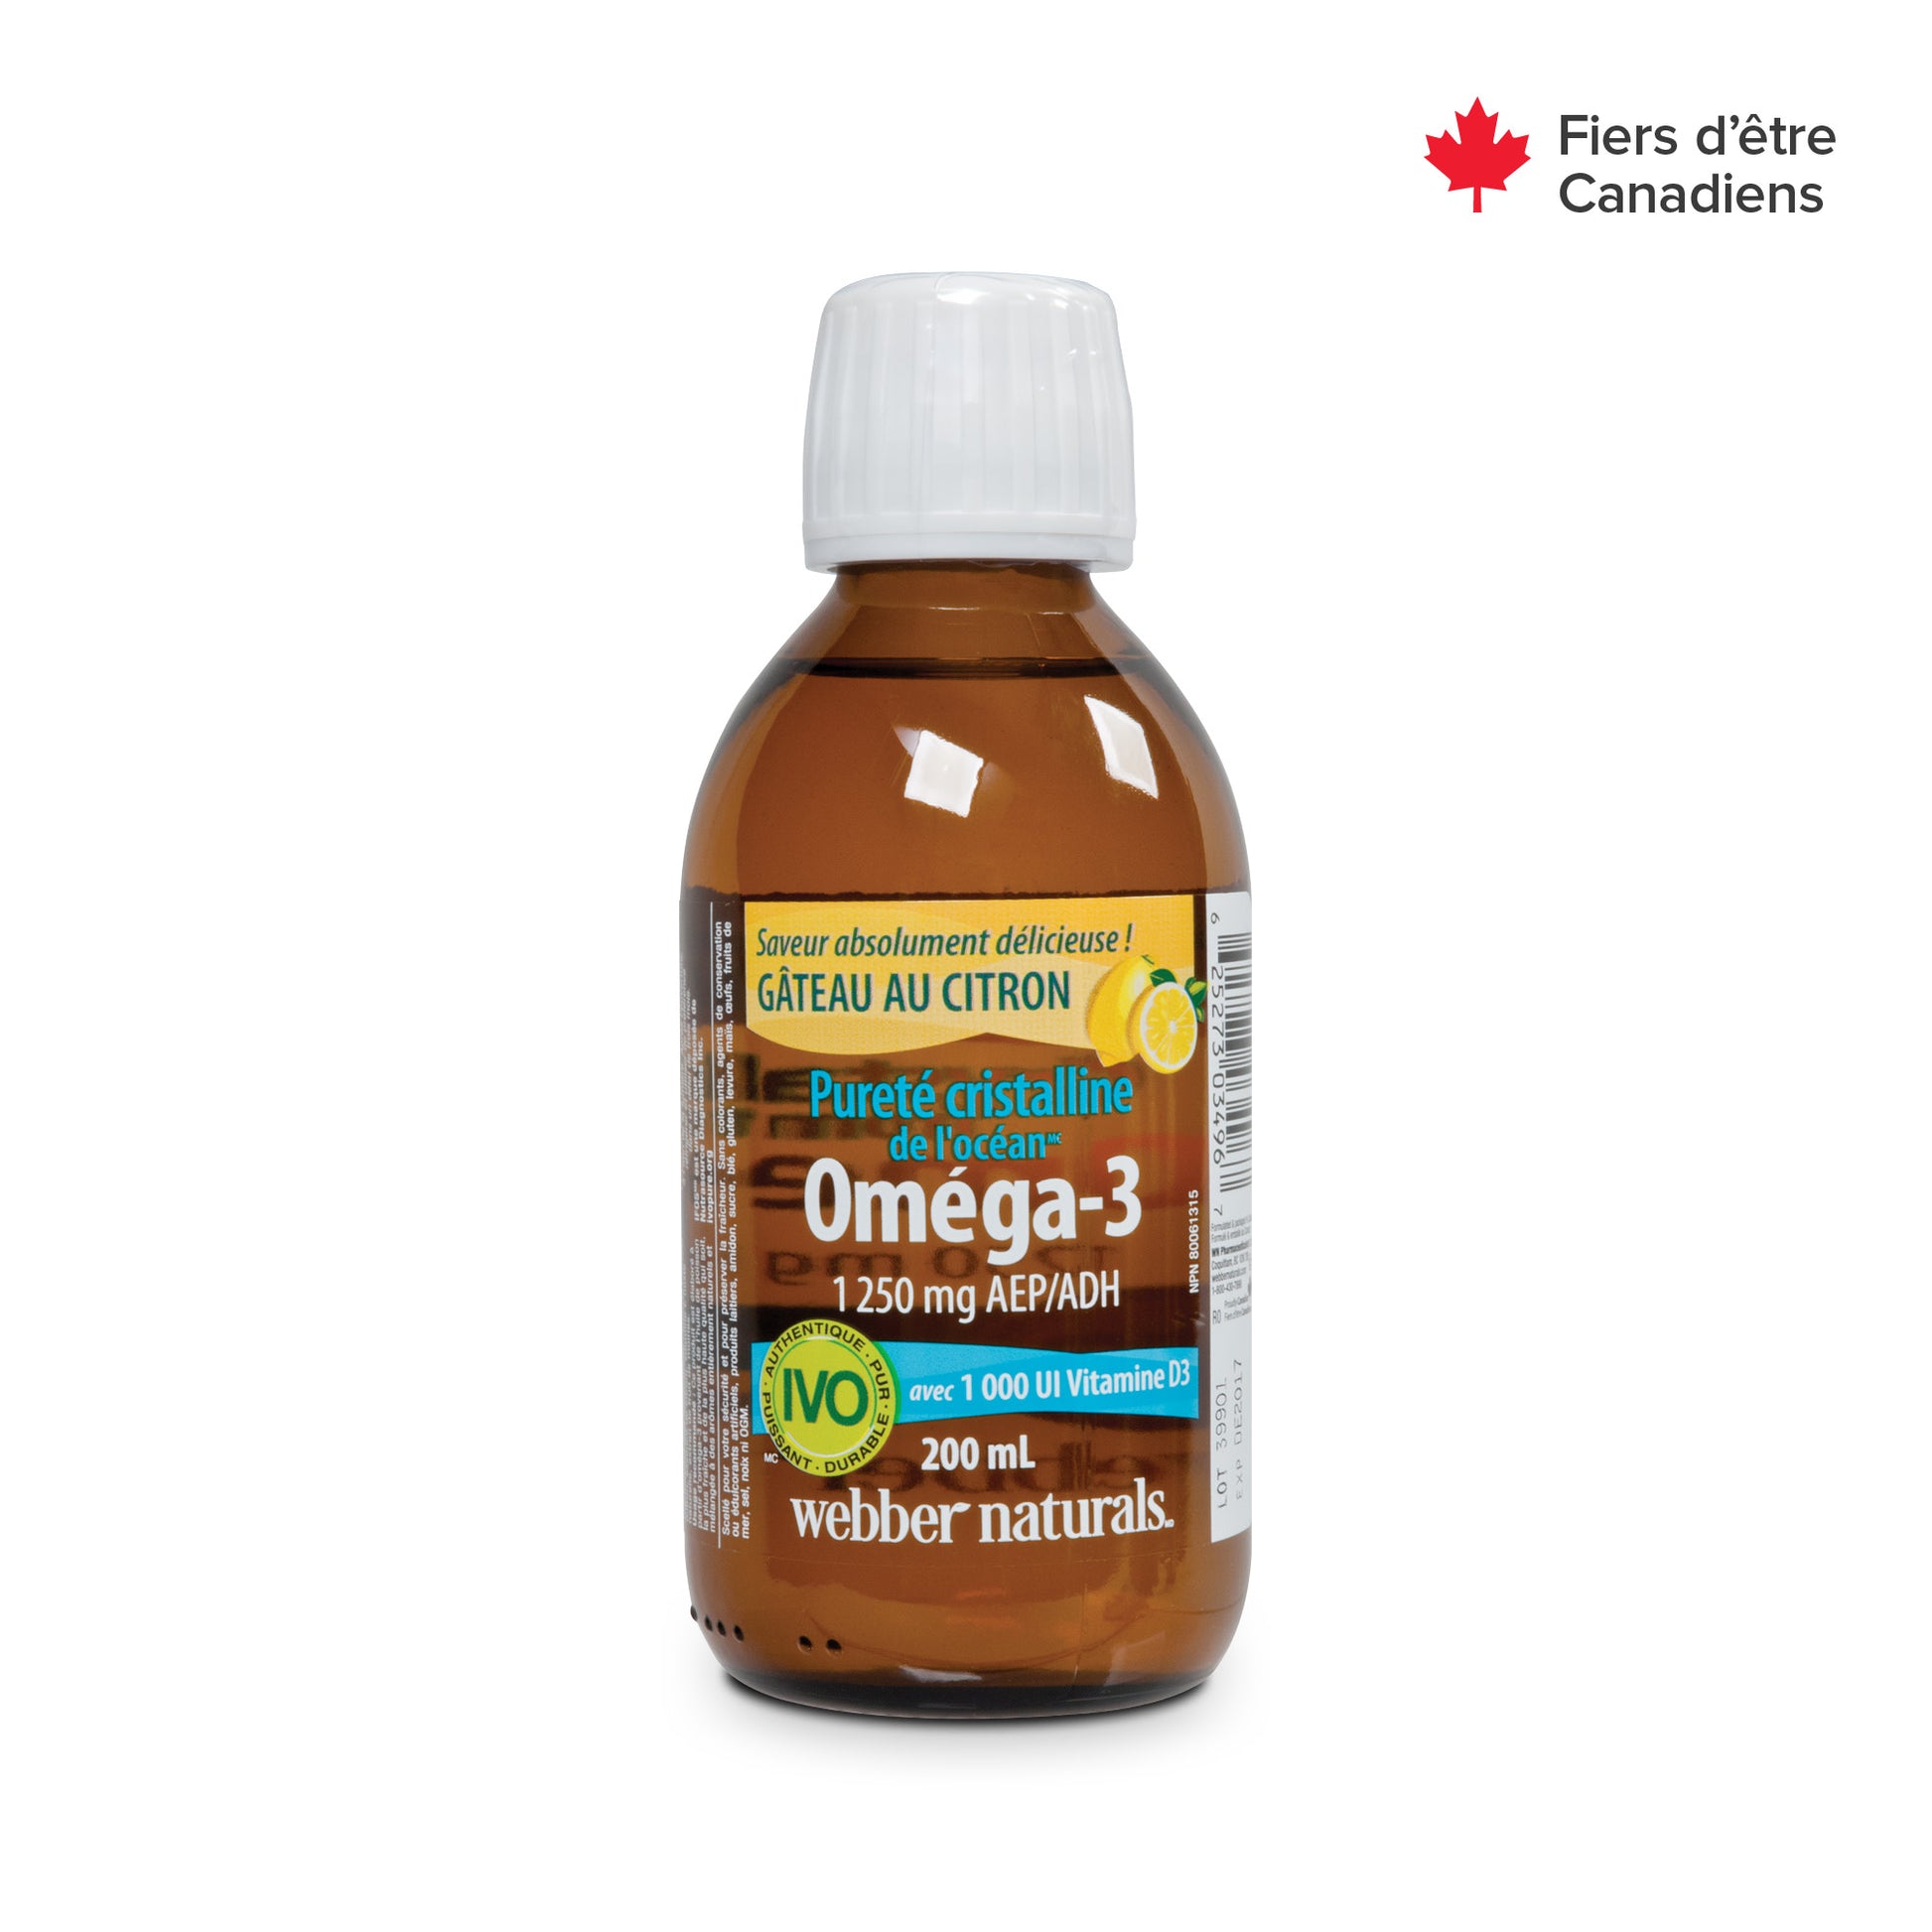 Pureté cristalline de l'océan Oméga-3 avec 1 000 UI Vitamine D3 1 250 mg AEP/ADH Gâteau au citron for Webber Naturals|v|hi-res|WN3496